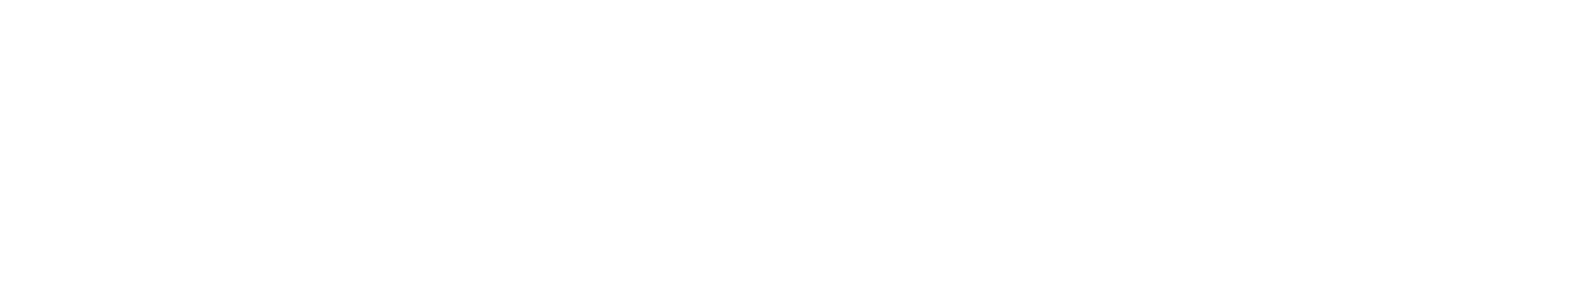 QUALCOMM logo grand pour les fonds sombres (PNG transparent)